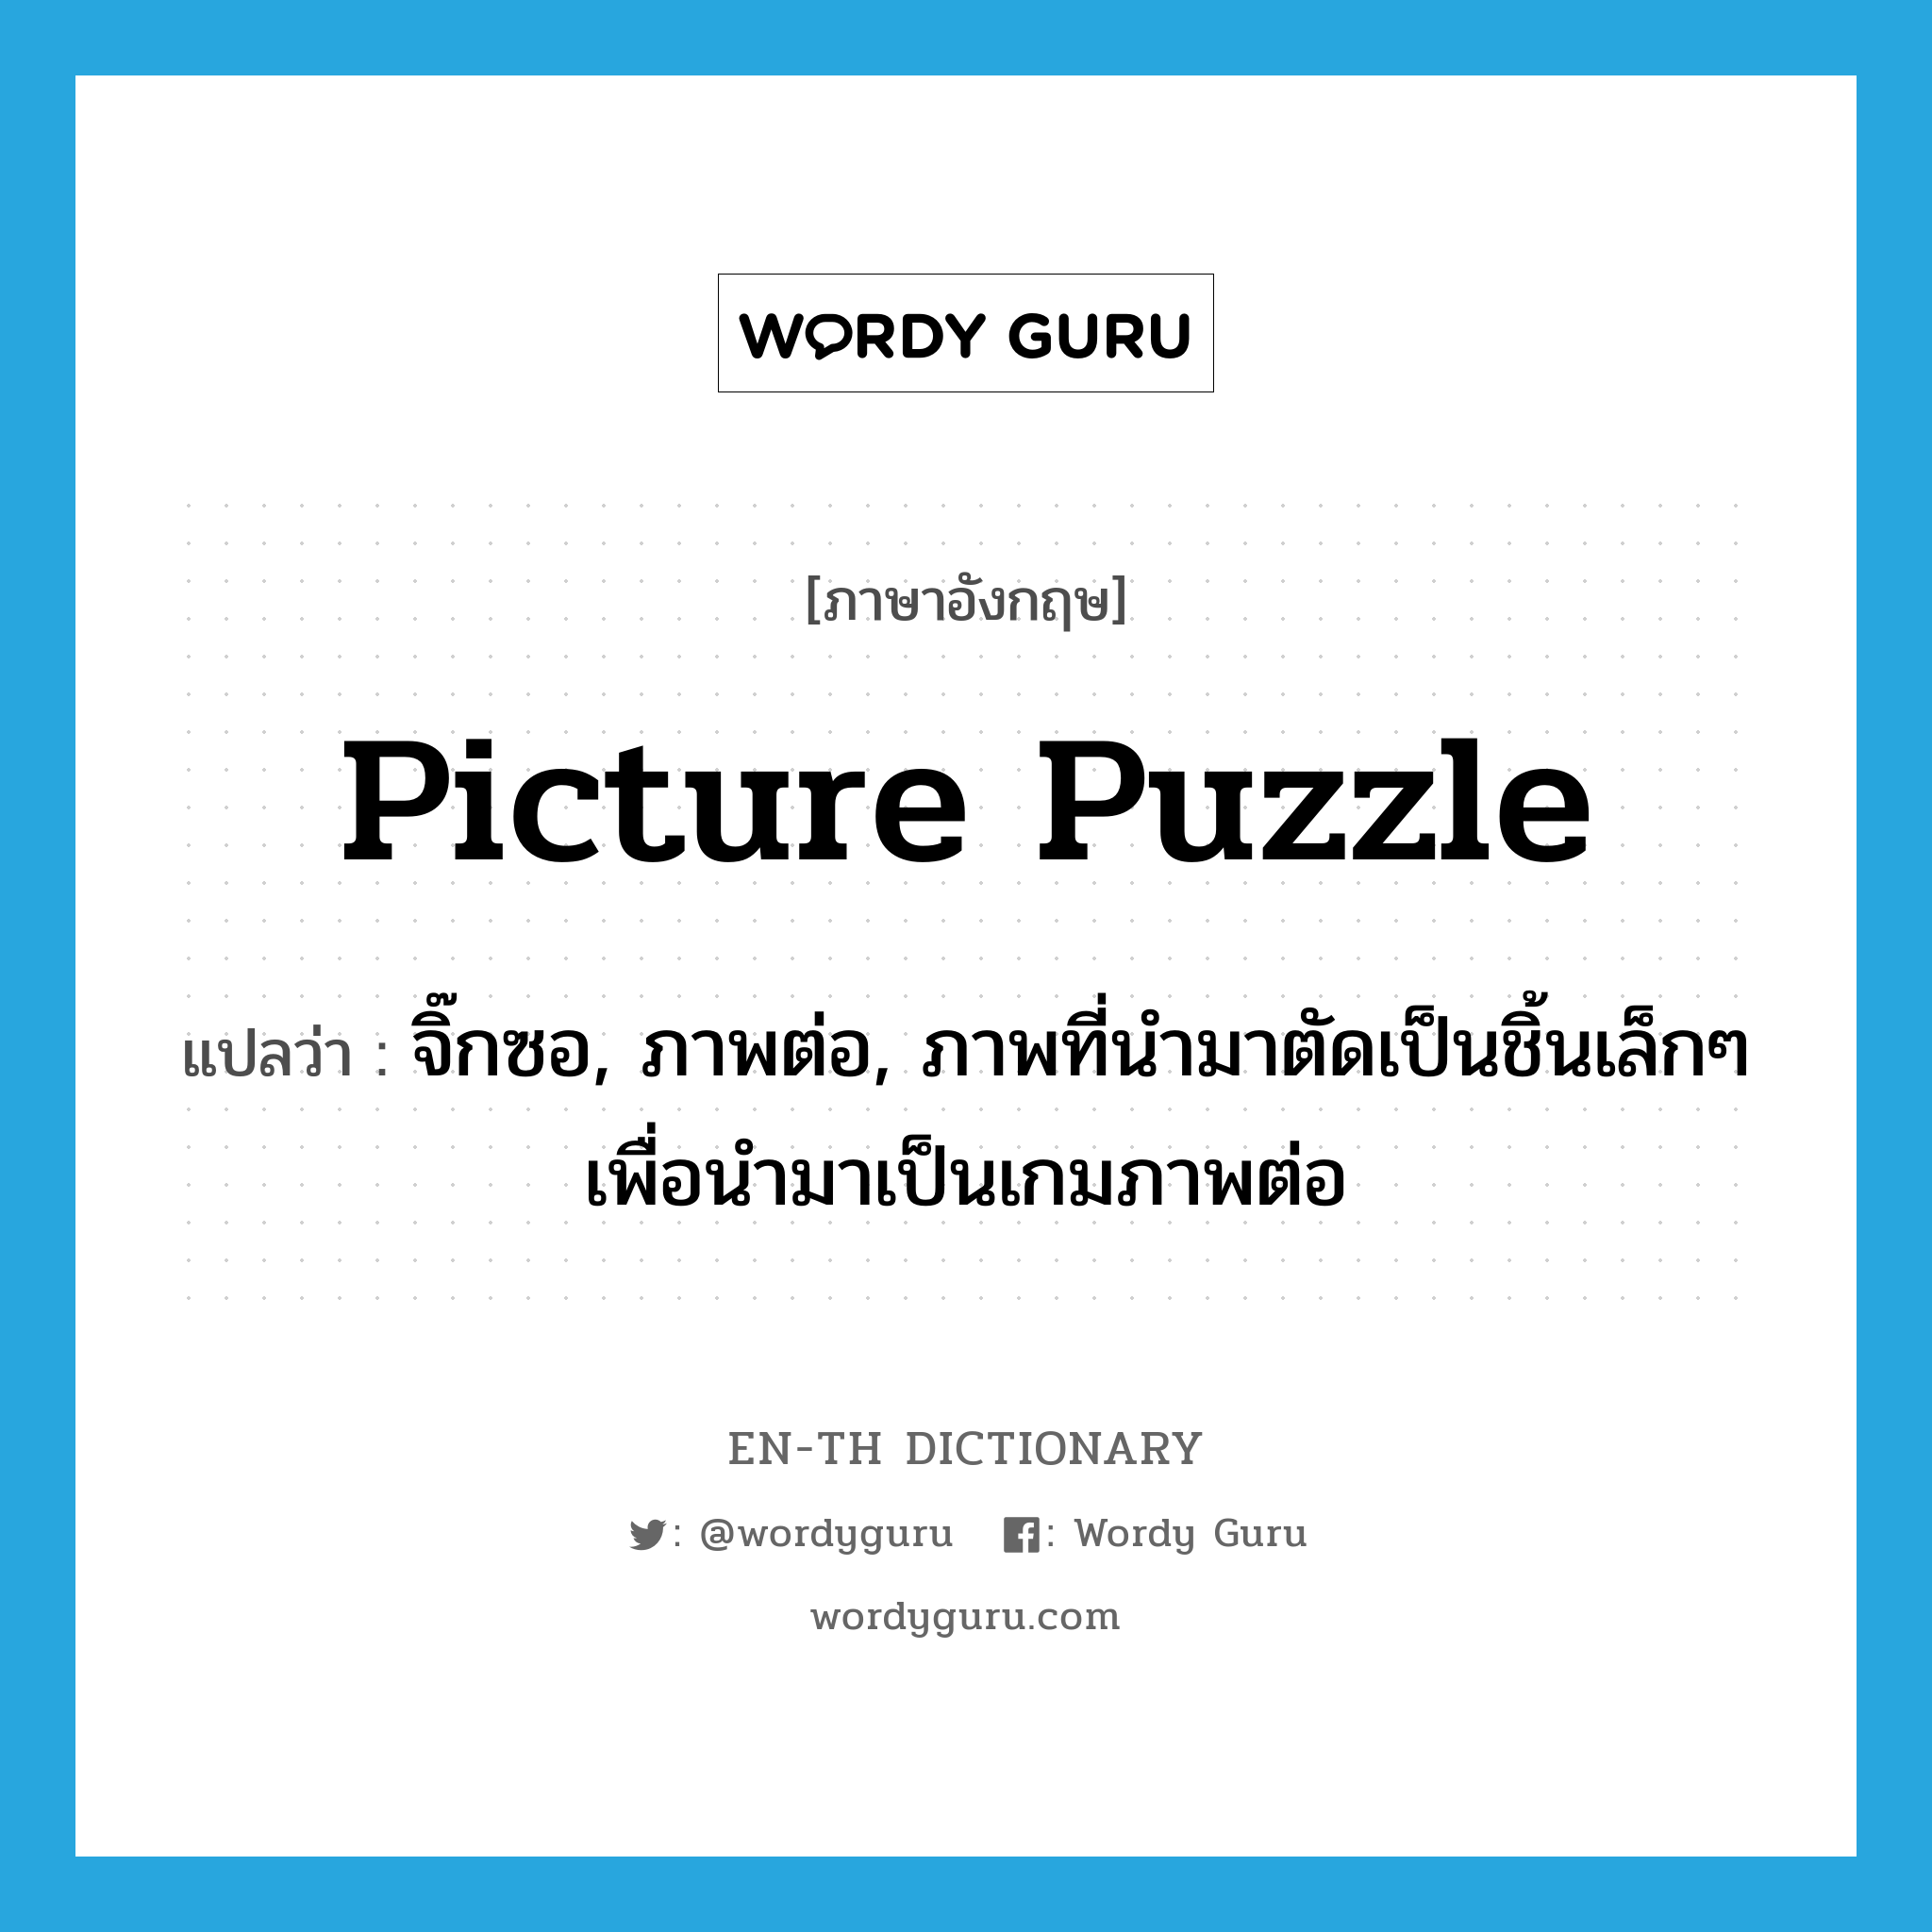 picture puzzle แปลว่า?, คำศัพท์ภาษาอังกฤษ picture puzzle แปลว่า จิ๊กซอ, ภาพต่อ, ภาพที่นำมาตัดเป็นชิ้นเล็กๆ เพื่อนำมาเป็นเกมภาพต่อ ประเภท N หมวด N